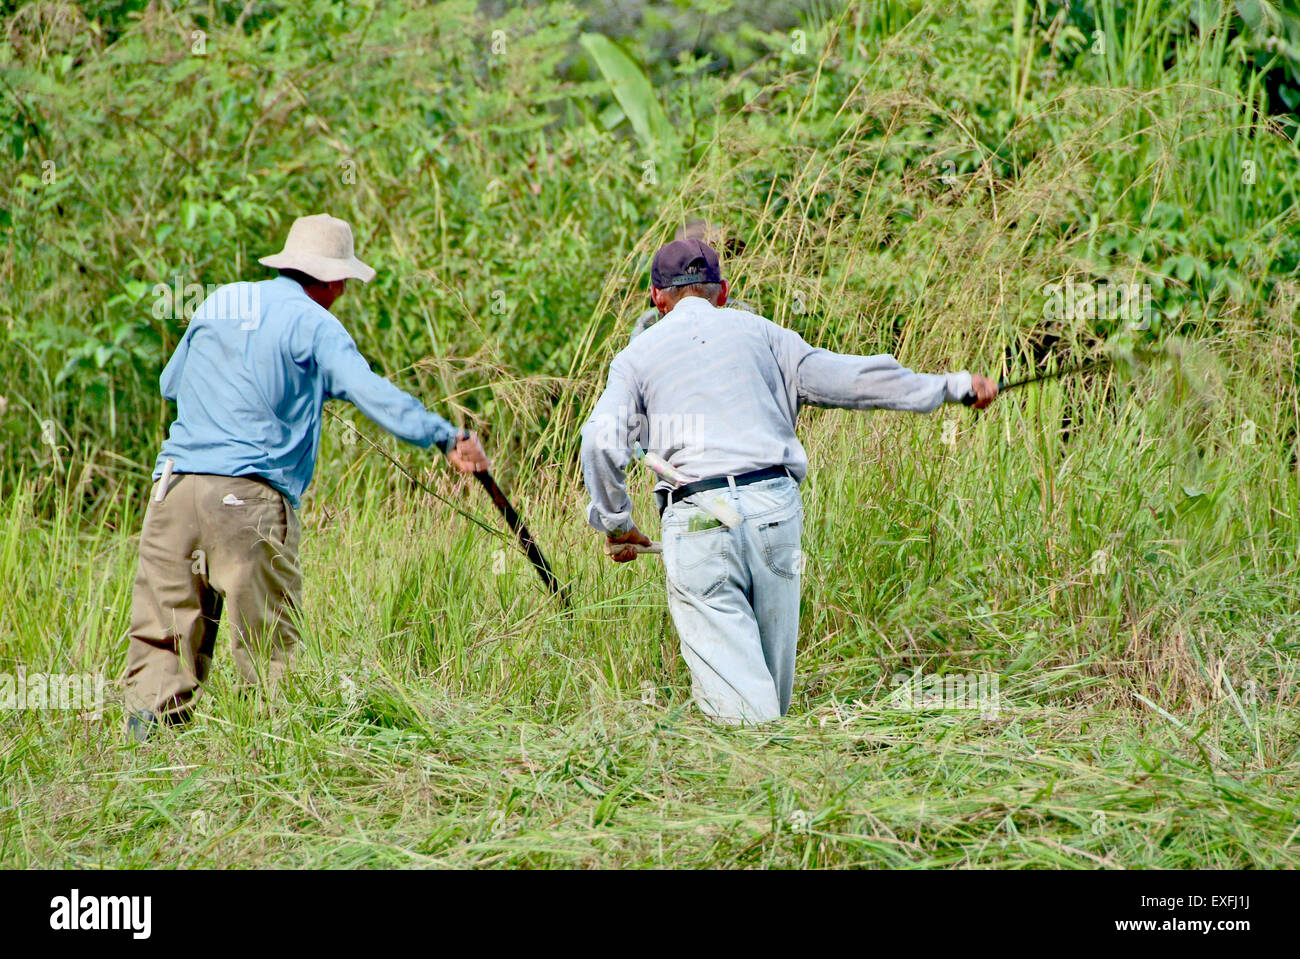 CHIRIQUI, PANAMA BOQUETE, 17. DEZEMBER 2006. Panamean Männer Heu in einer Farm mit lange Machete Messer schneiden. Stockfoto